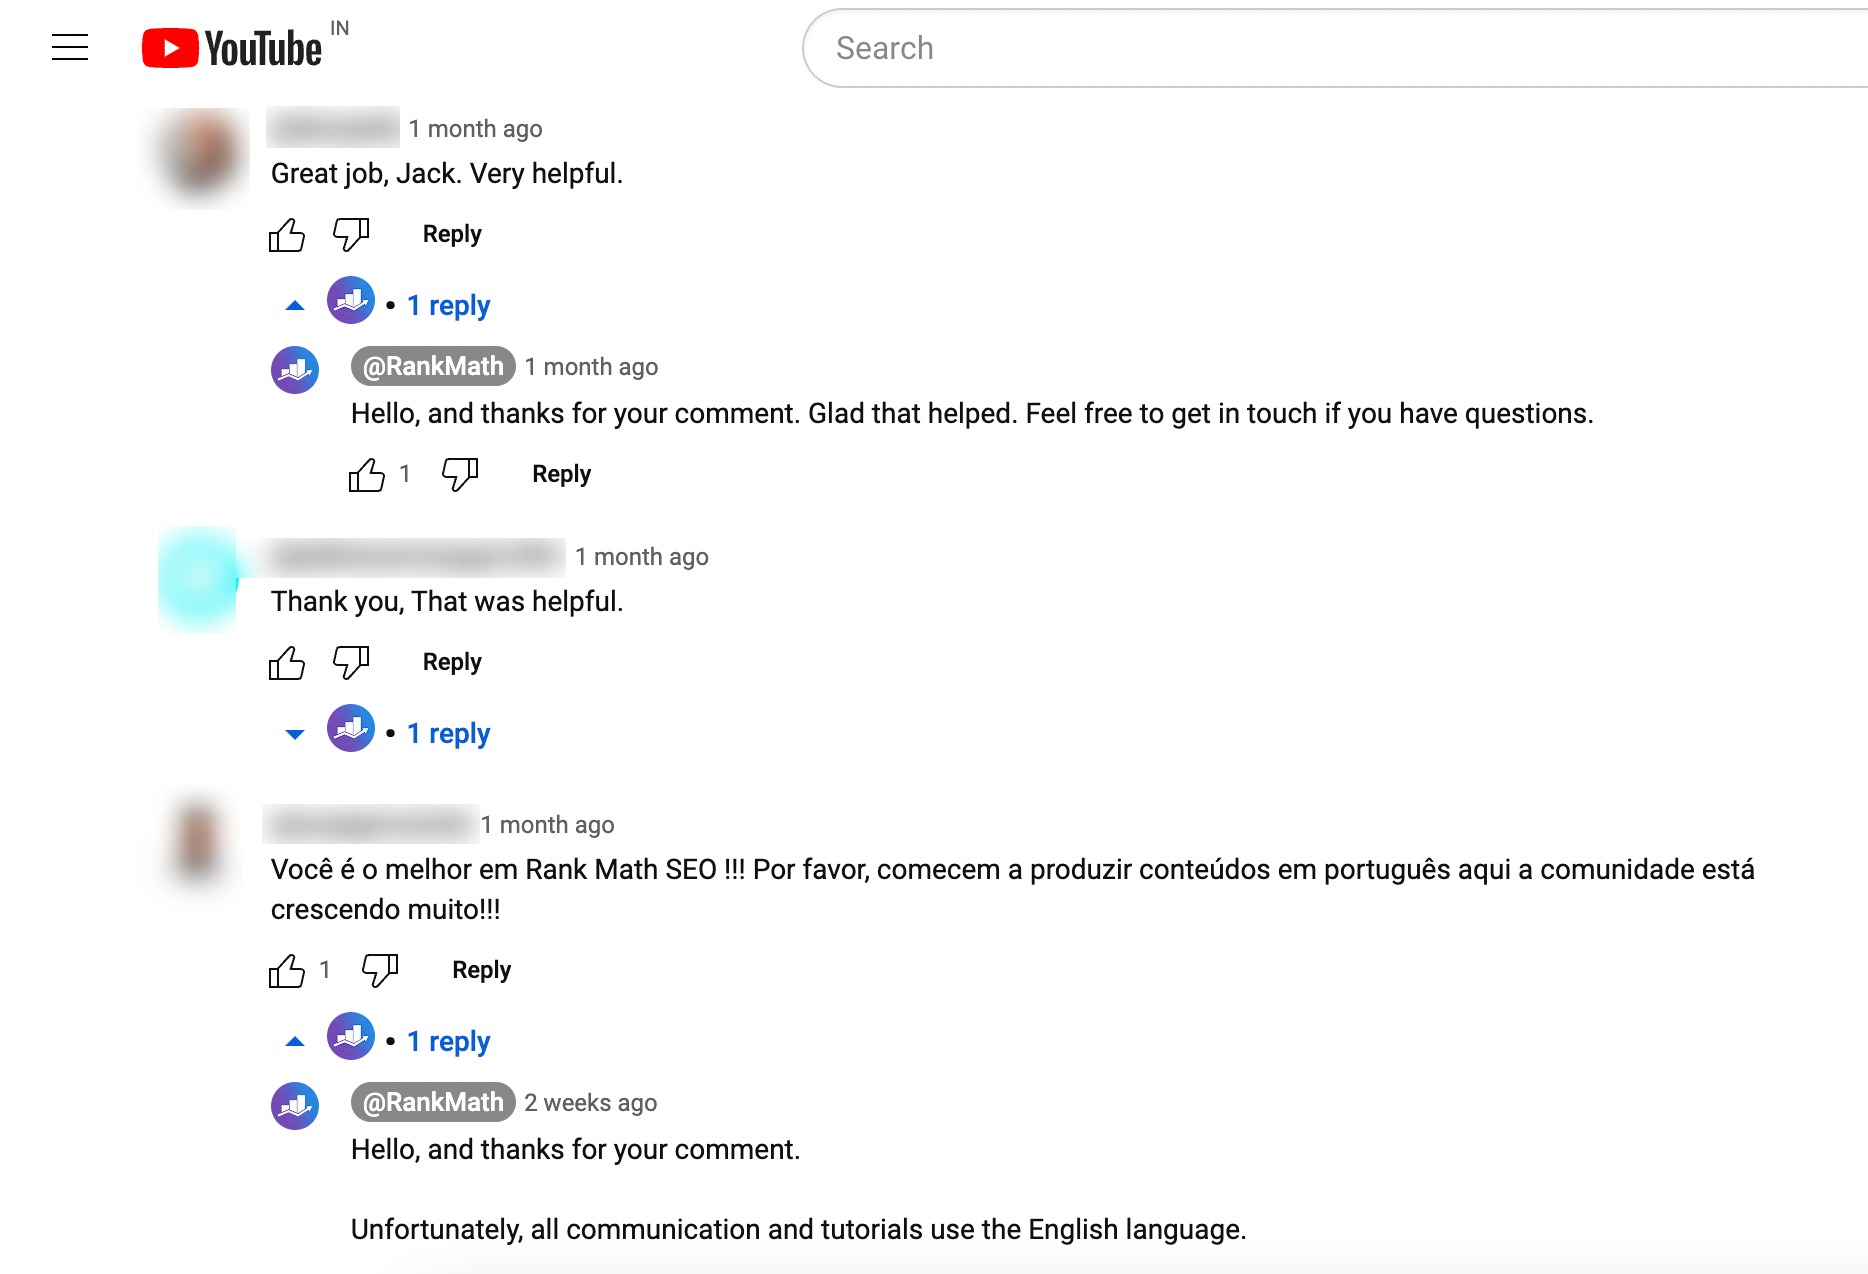 Comentários/respostas no YouTube